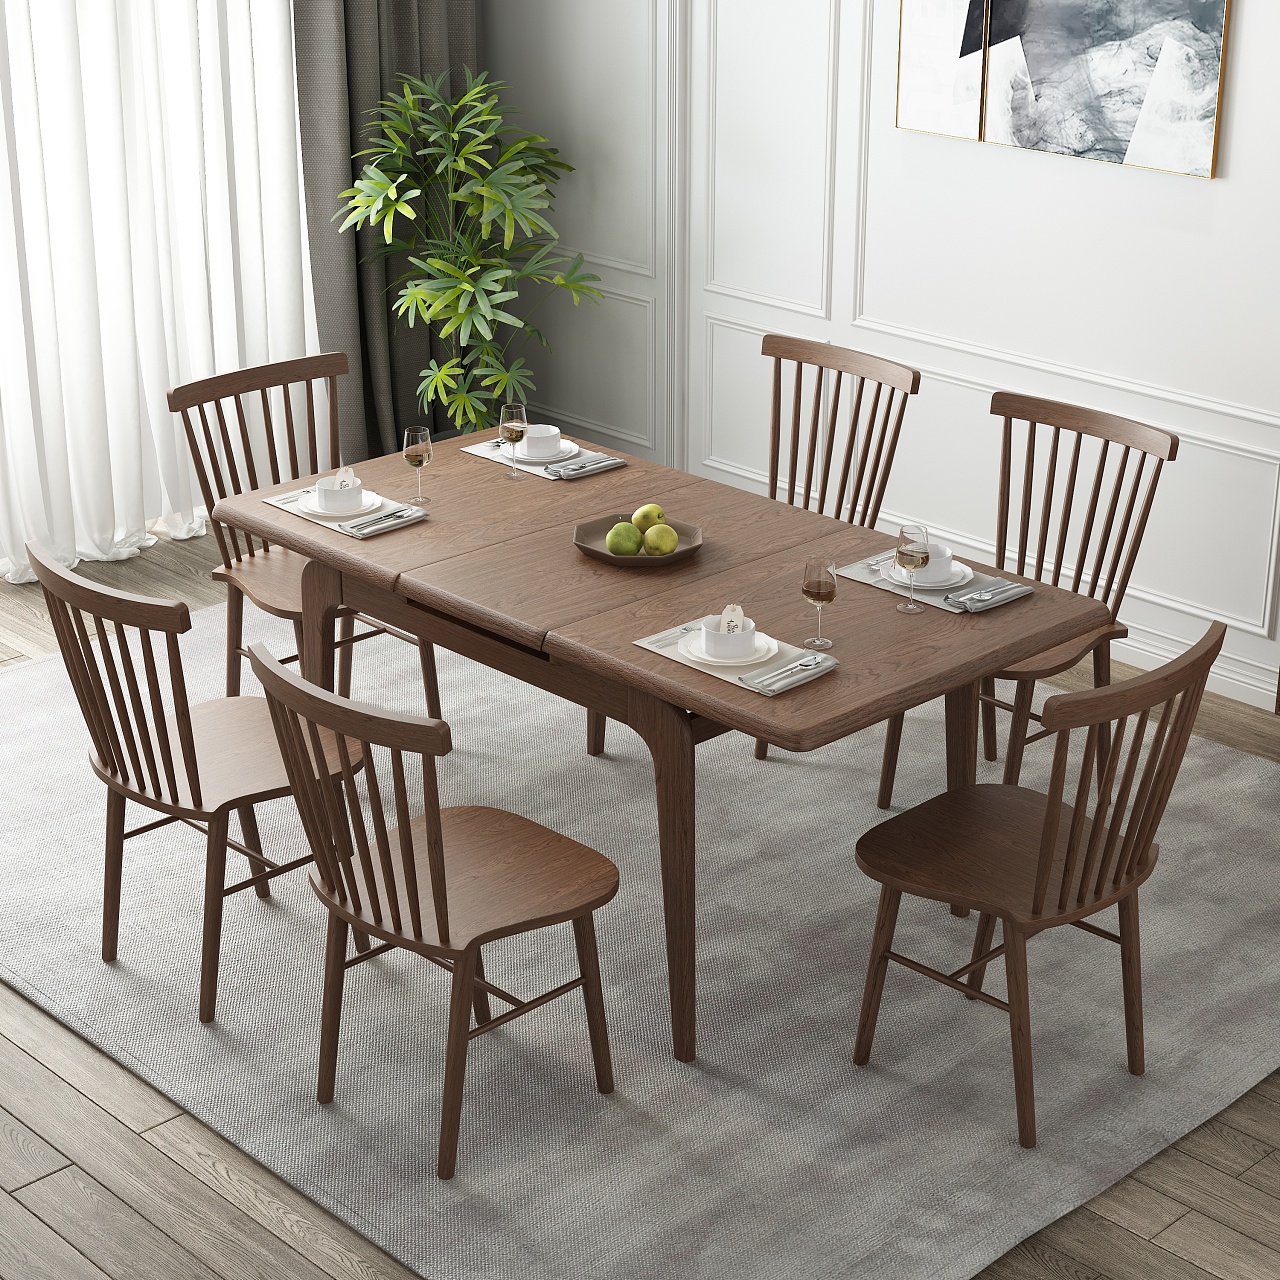 欧美混搭风格600平米别墅餐厅餐桌椅装修效果图_别墅设计图